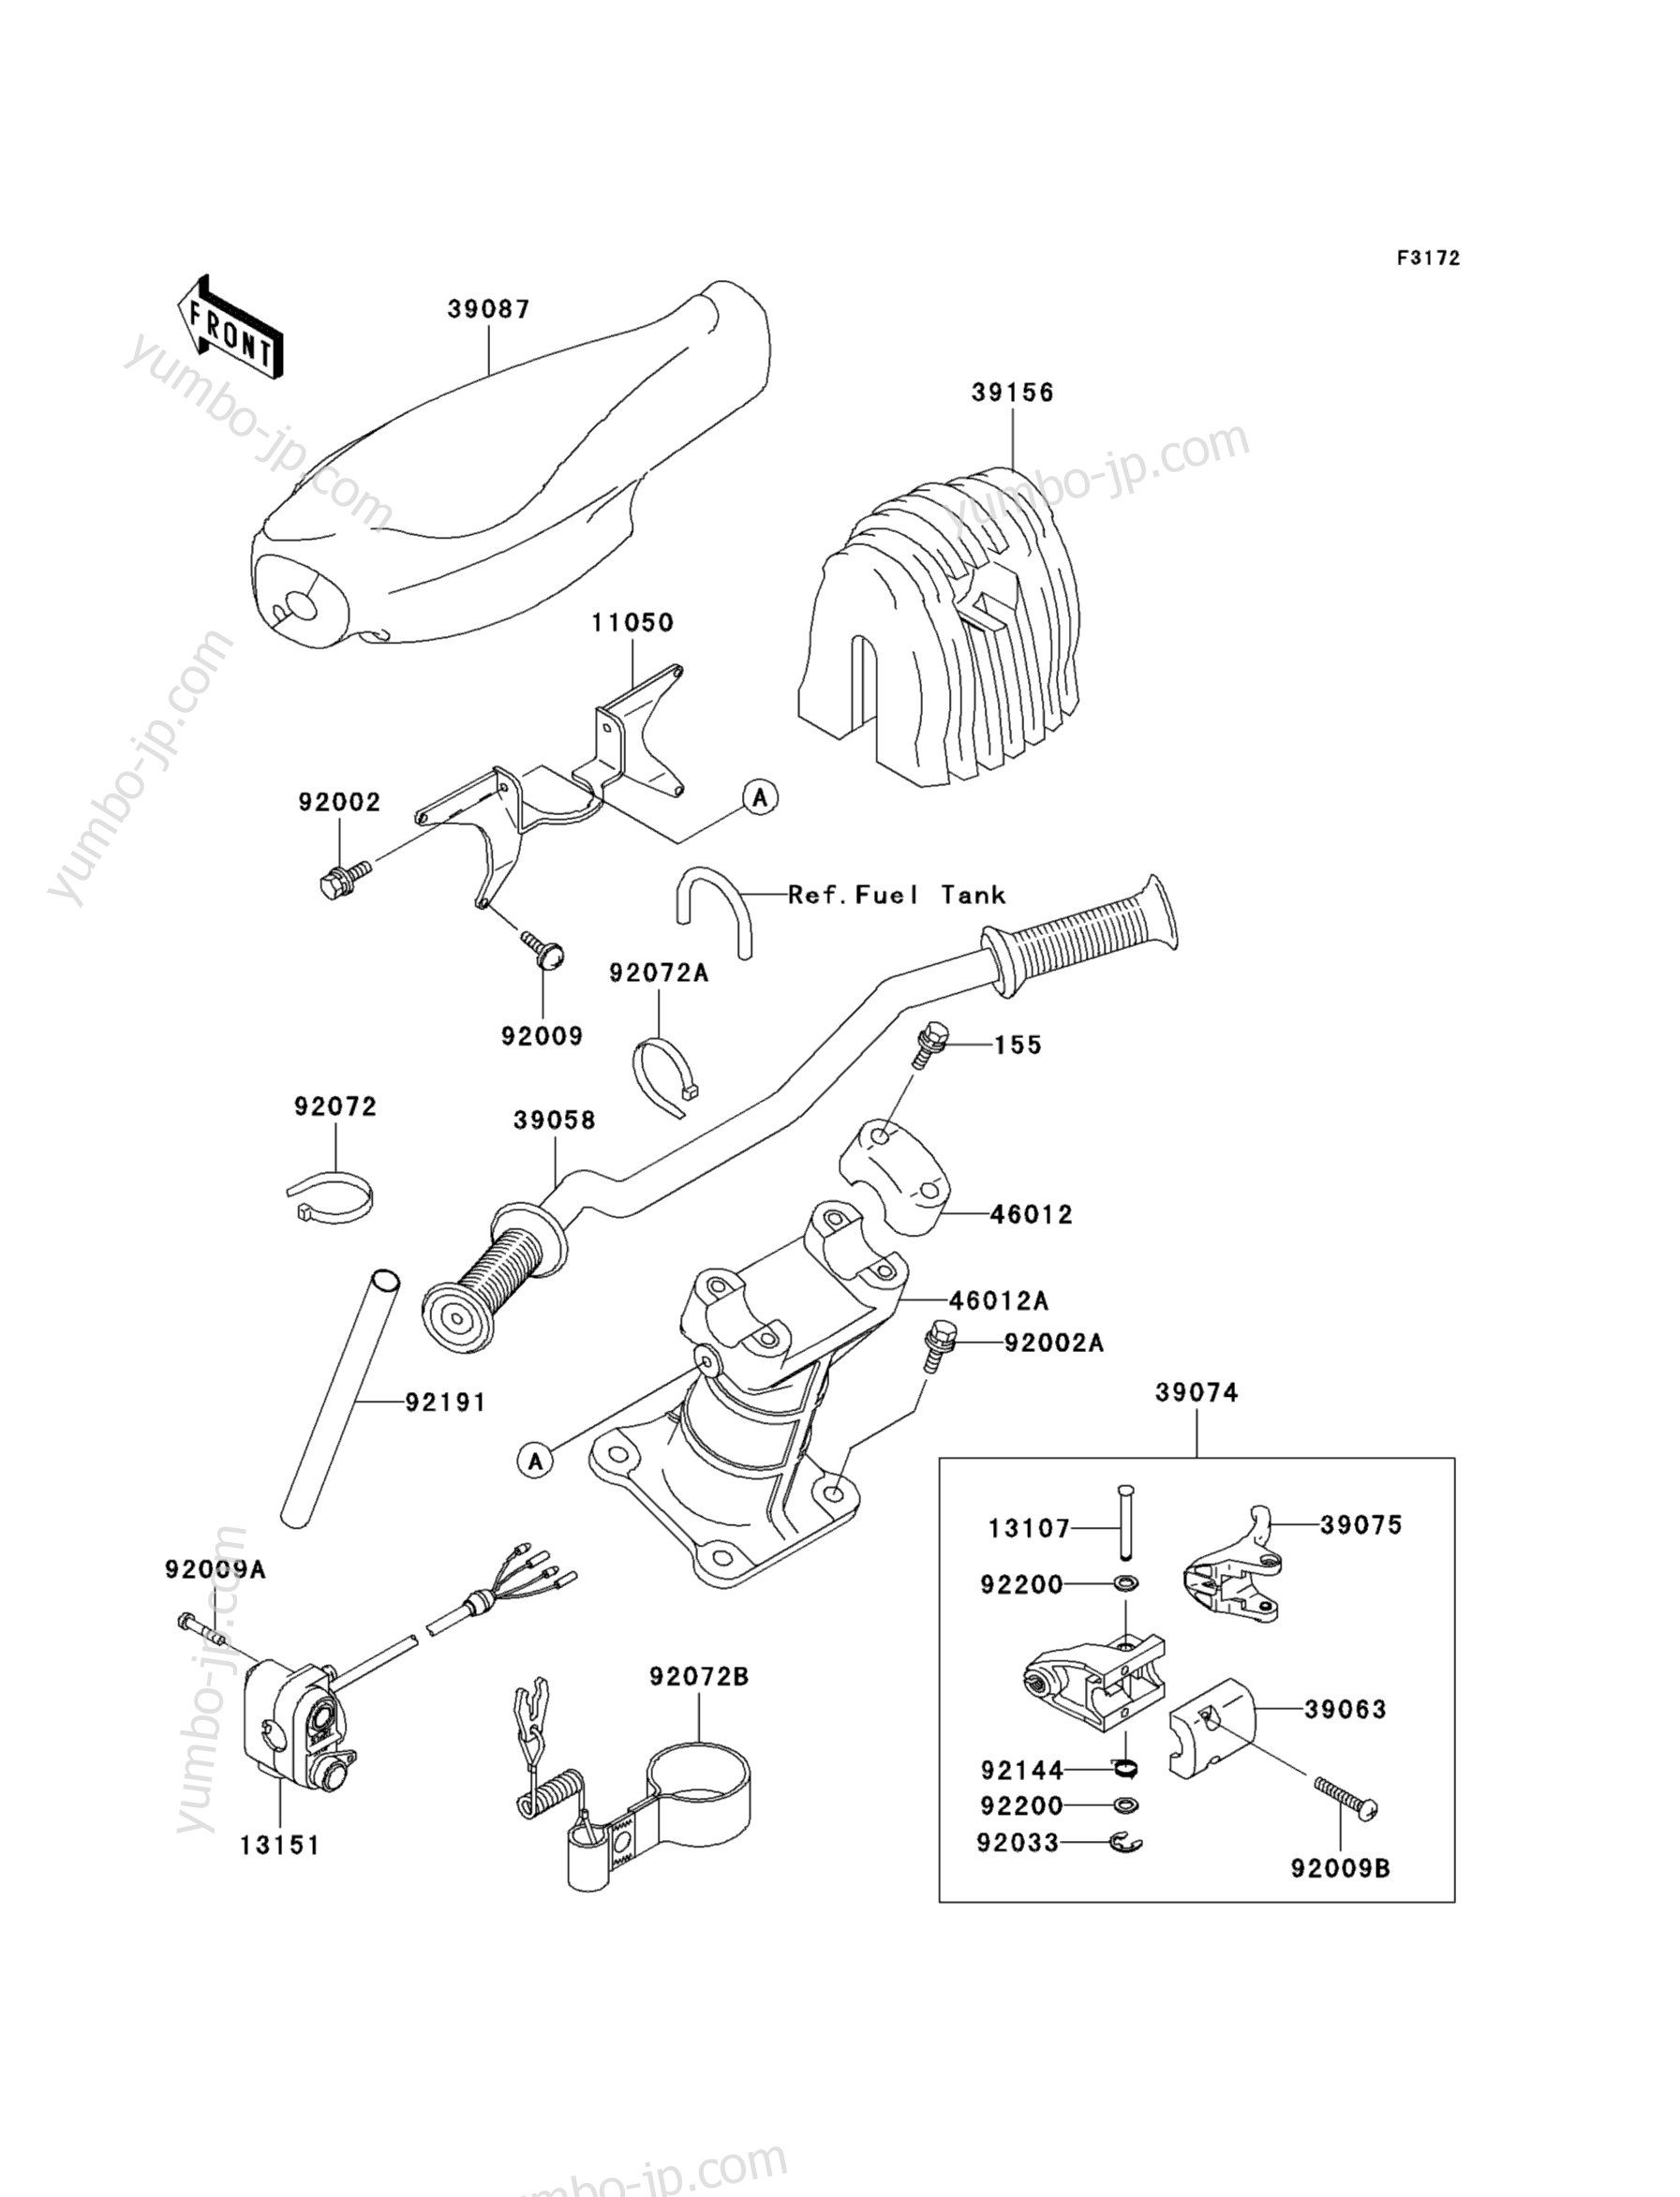 Румпель (рукоятка управления) для гидроциклов KAWASAKI JET SKI 1200 STX-R (JT1200-A1) 2002 г.